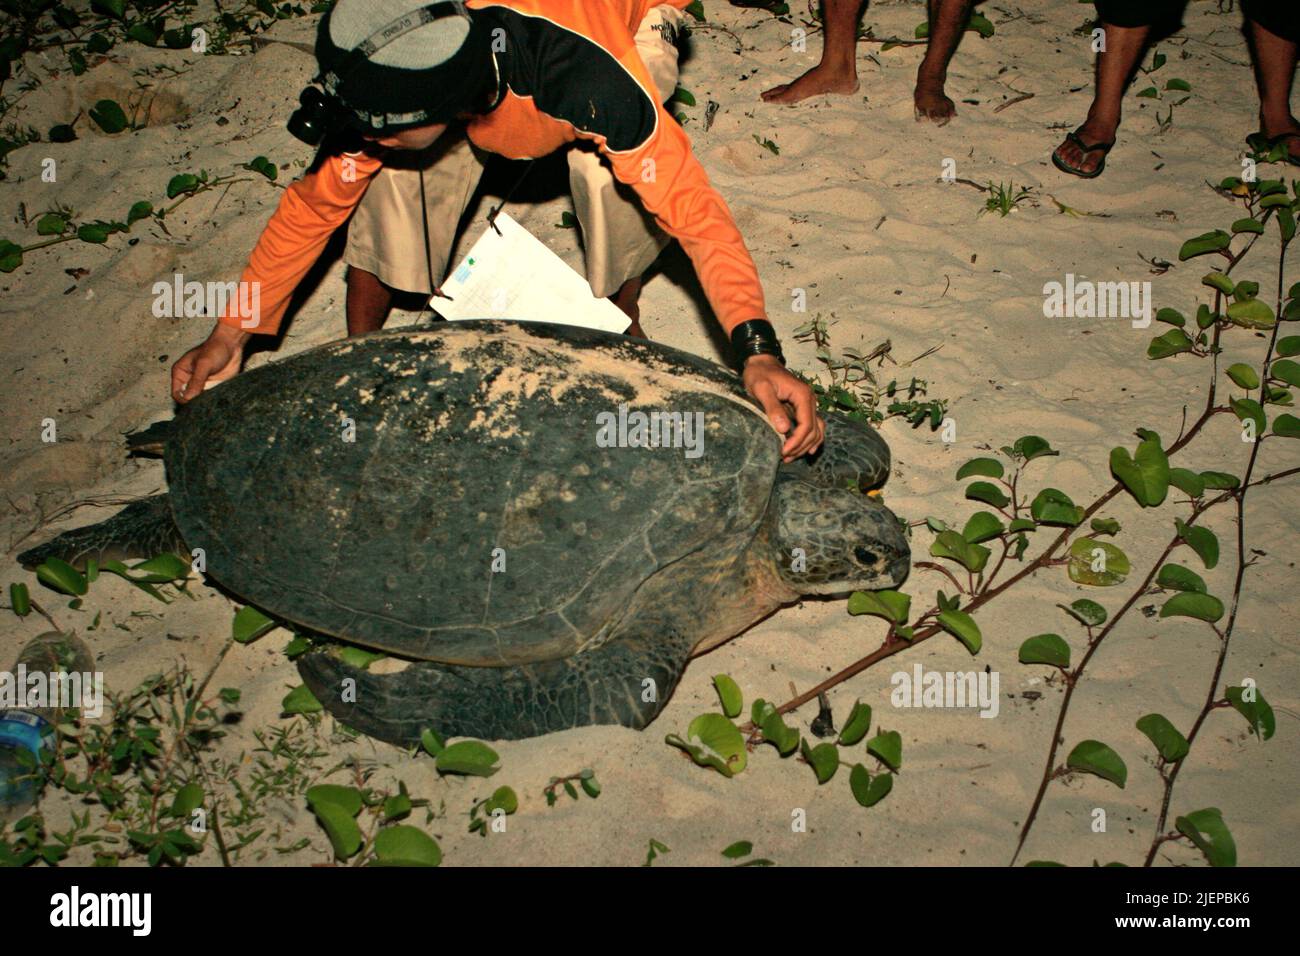 Ein freiwilliger Schutzarbeiter, der die Länge einer grünen Meeresschildkröte (Chelonia mydas) misst, nachdem sie ihre Eier auf der Sangalaki-Insel gelegt hat, einer Insel, die dem Schutz von Meeresschildkröten gewidmet ist und Teil des Berau Marine Protected Area innerhalb des Derawan-Archipels in Berau, Ost-Kalimantan, Indonesien. Stockfoto